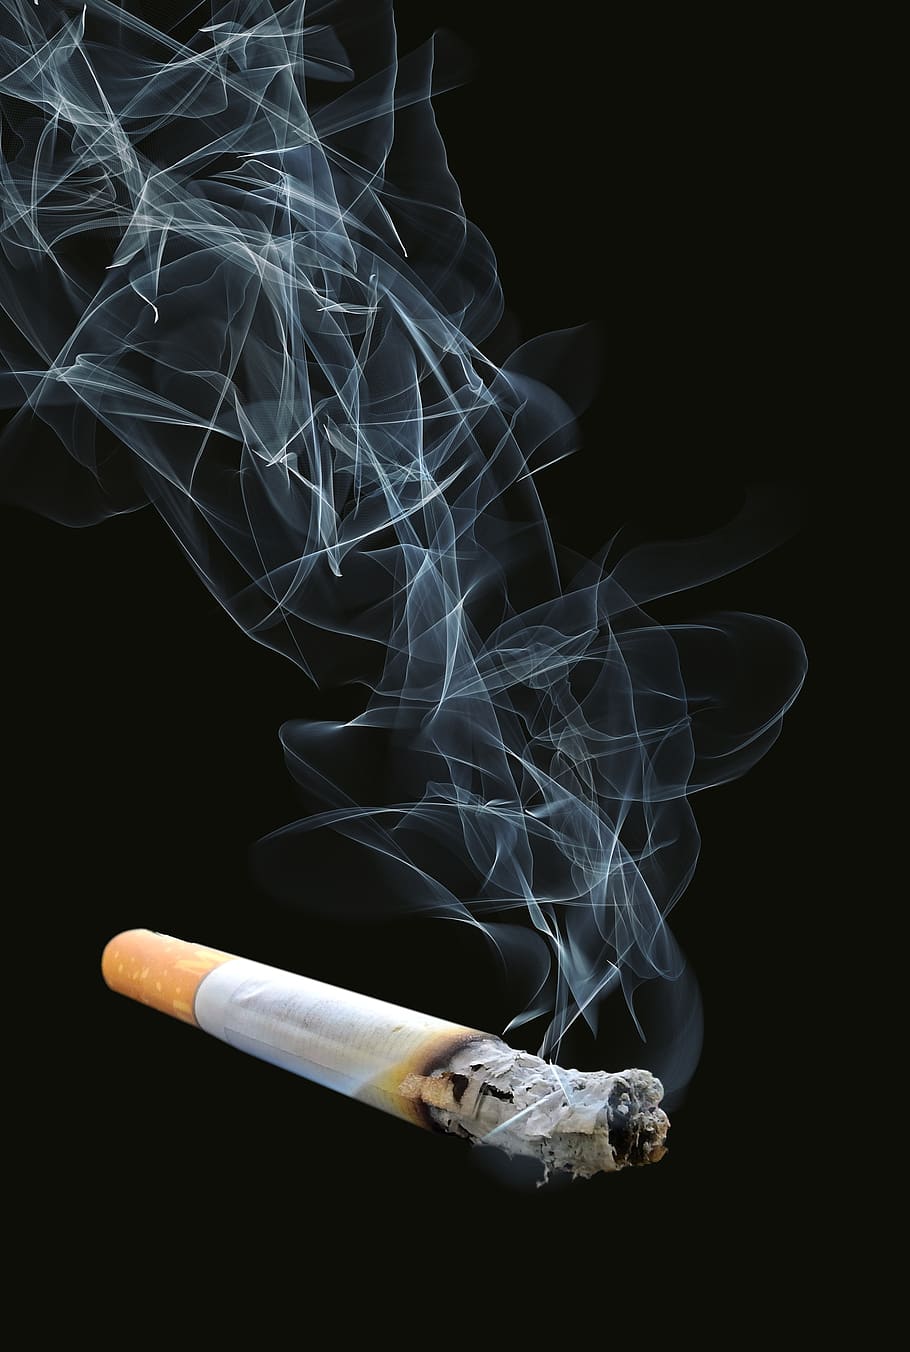 cigarro, fumo, fumaça, cinza, vício, insalubre, fumaça - estrutura física, sinal de alerta, sinal, problemas de tabagismo